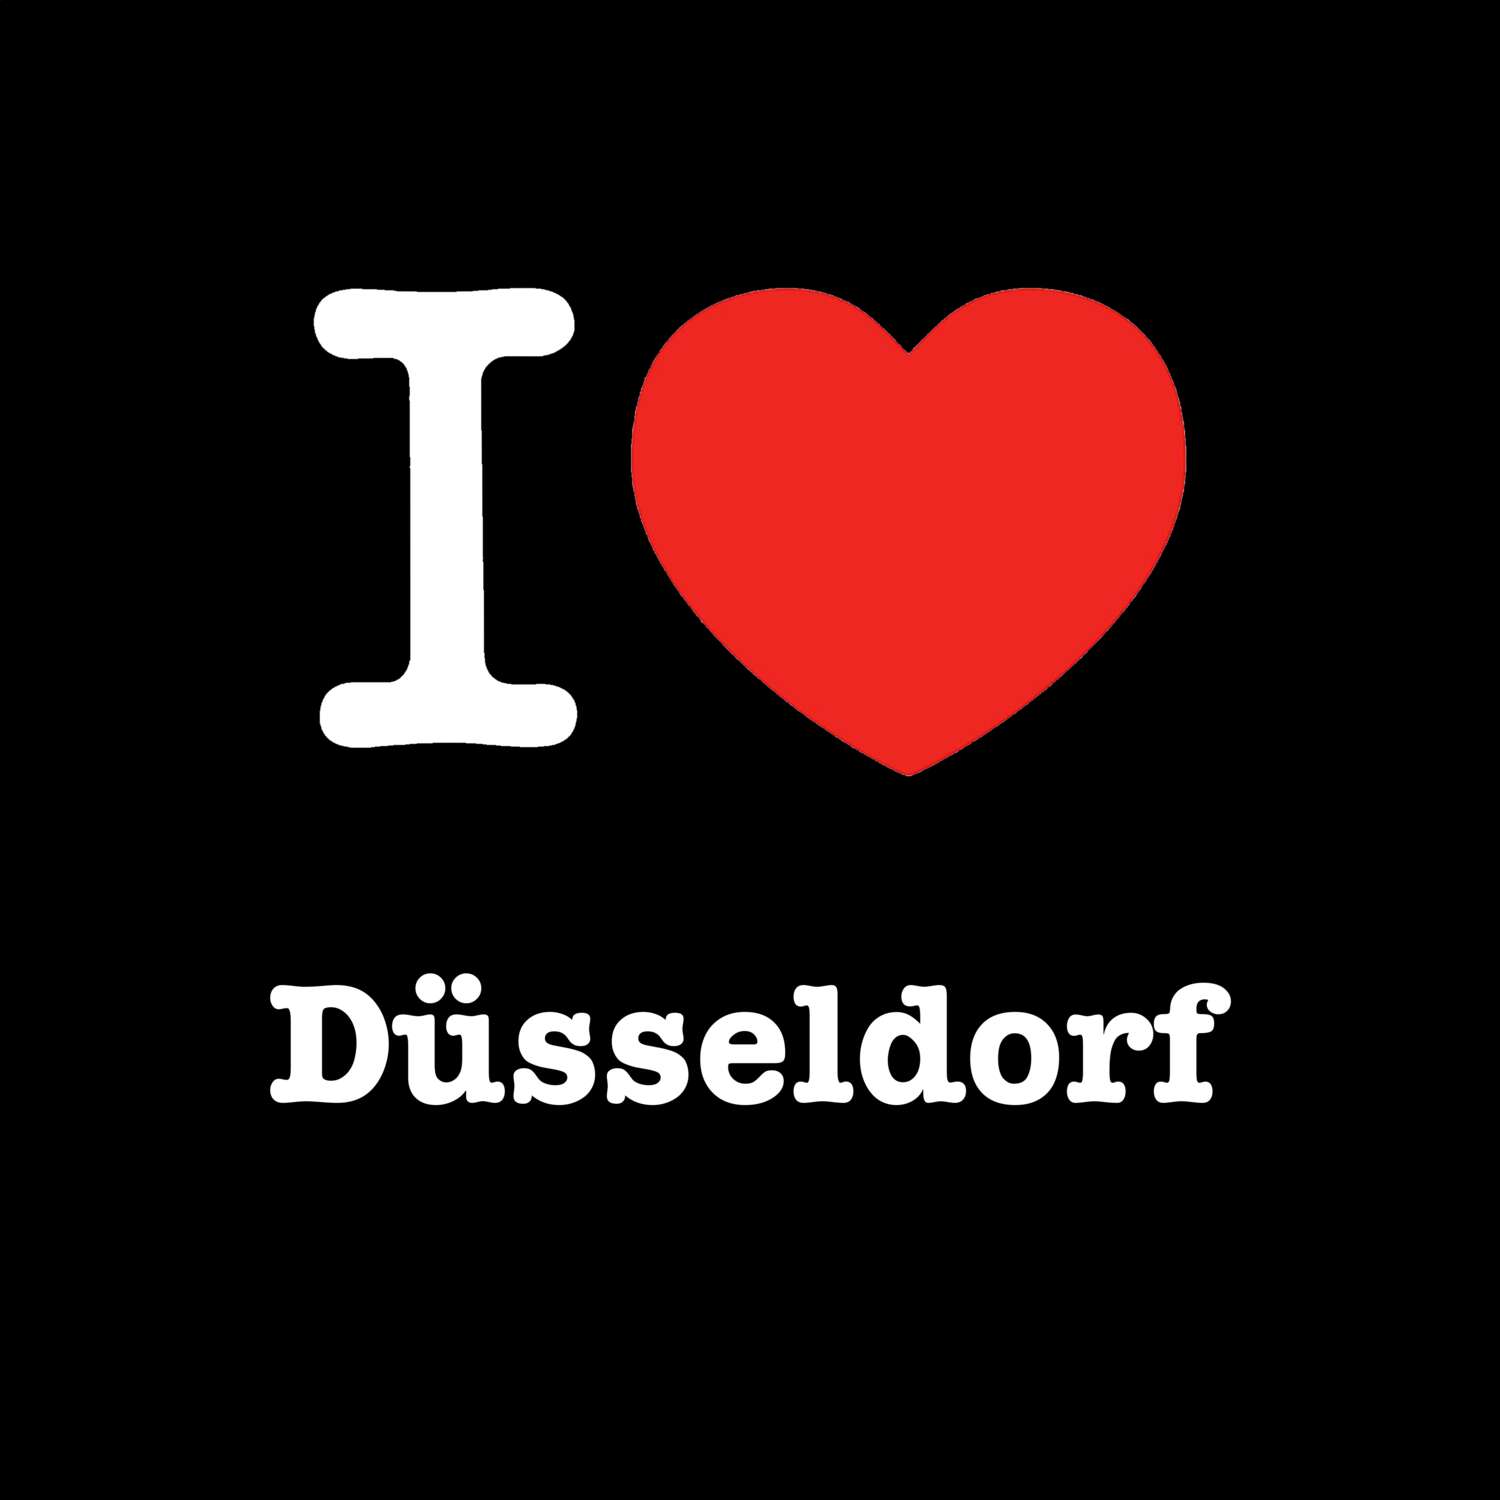 Düsseldorf T-Shirt »I love«